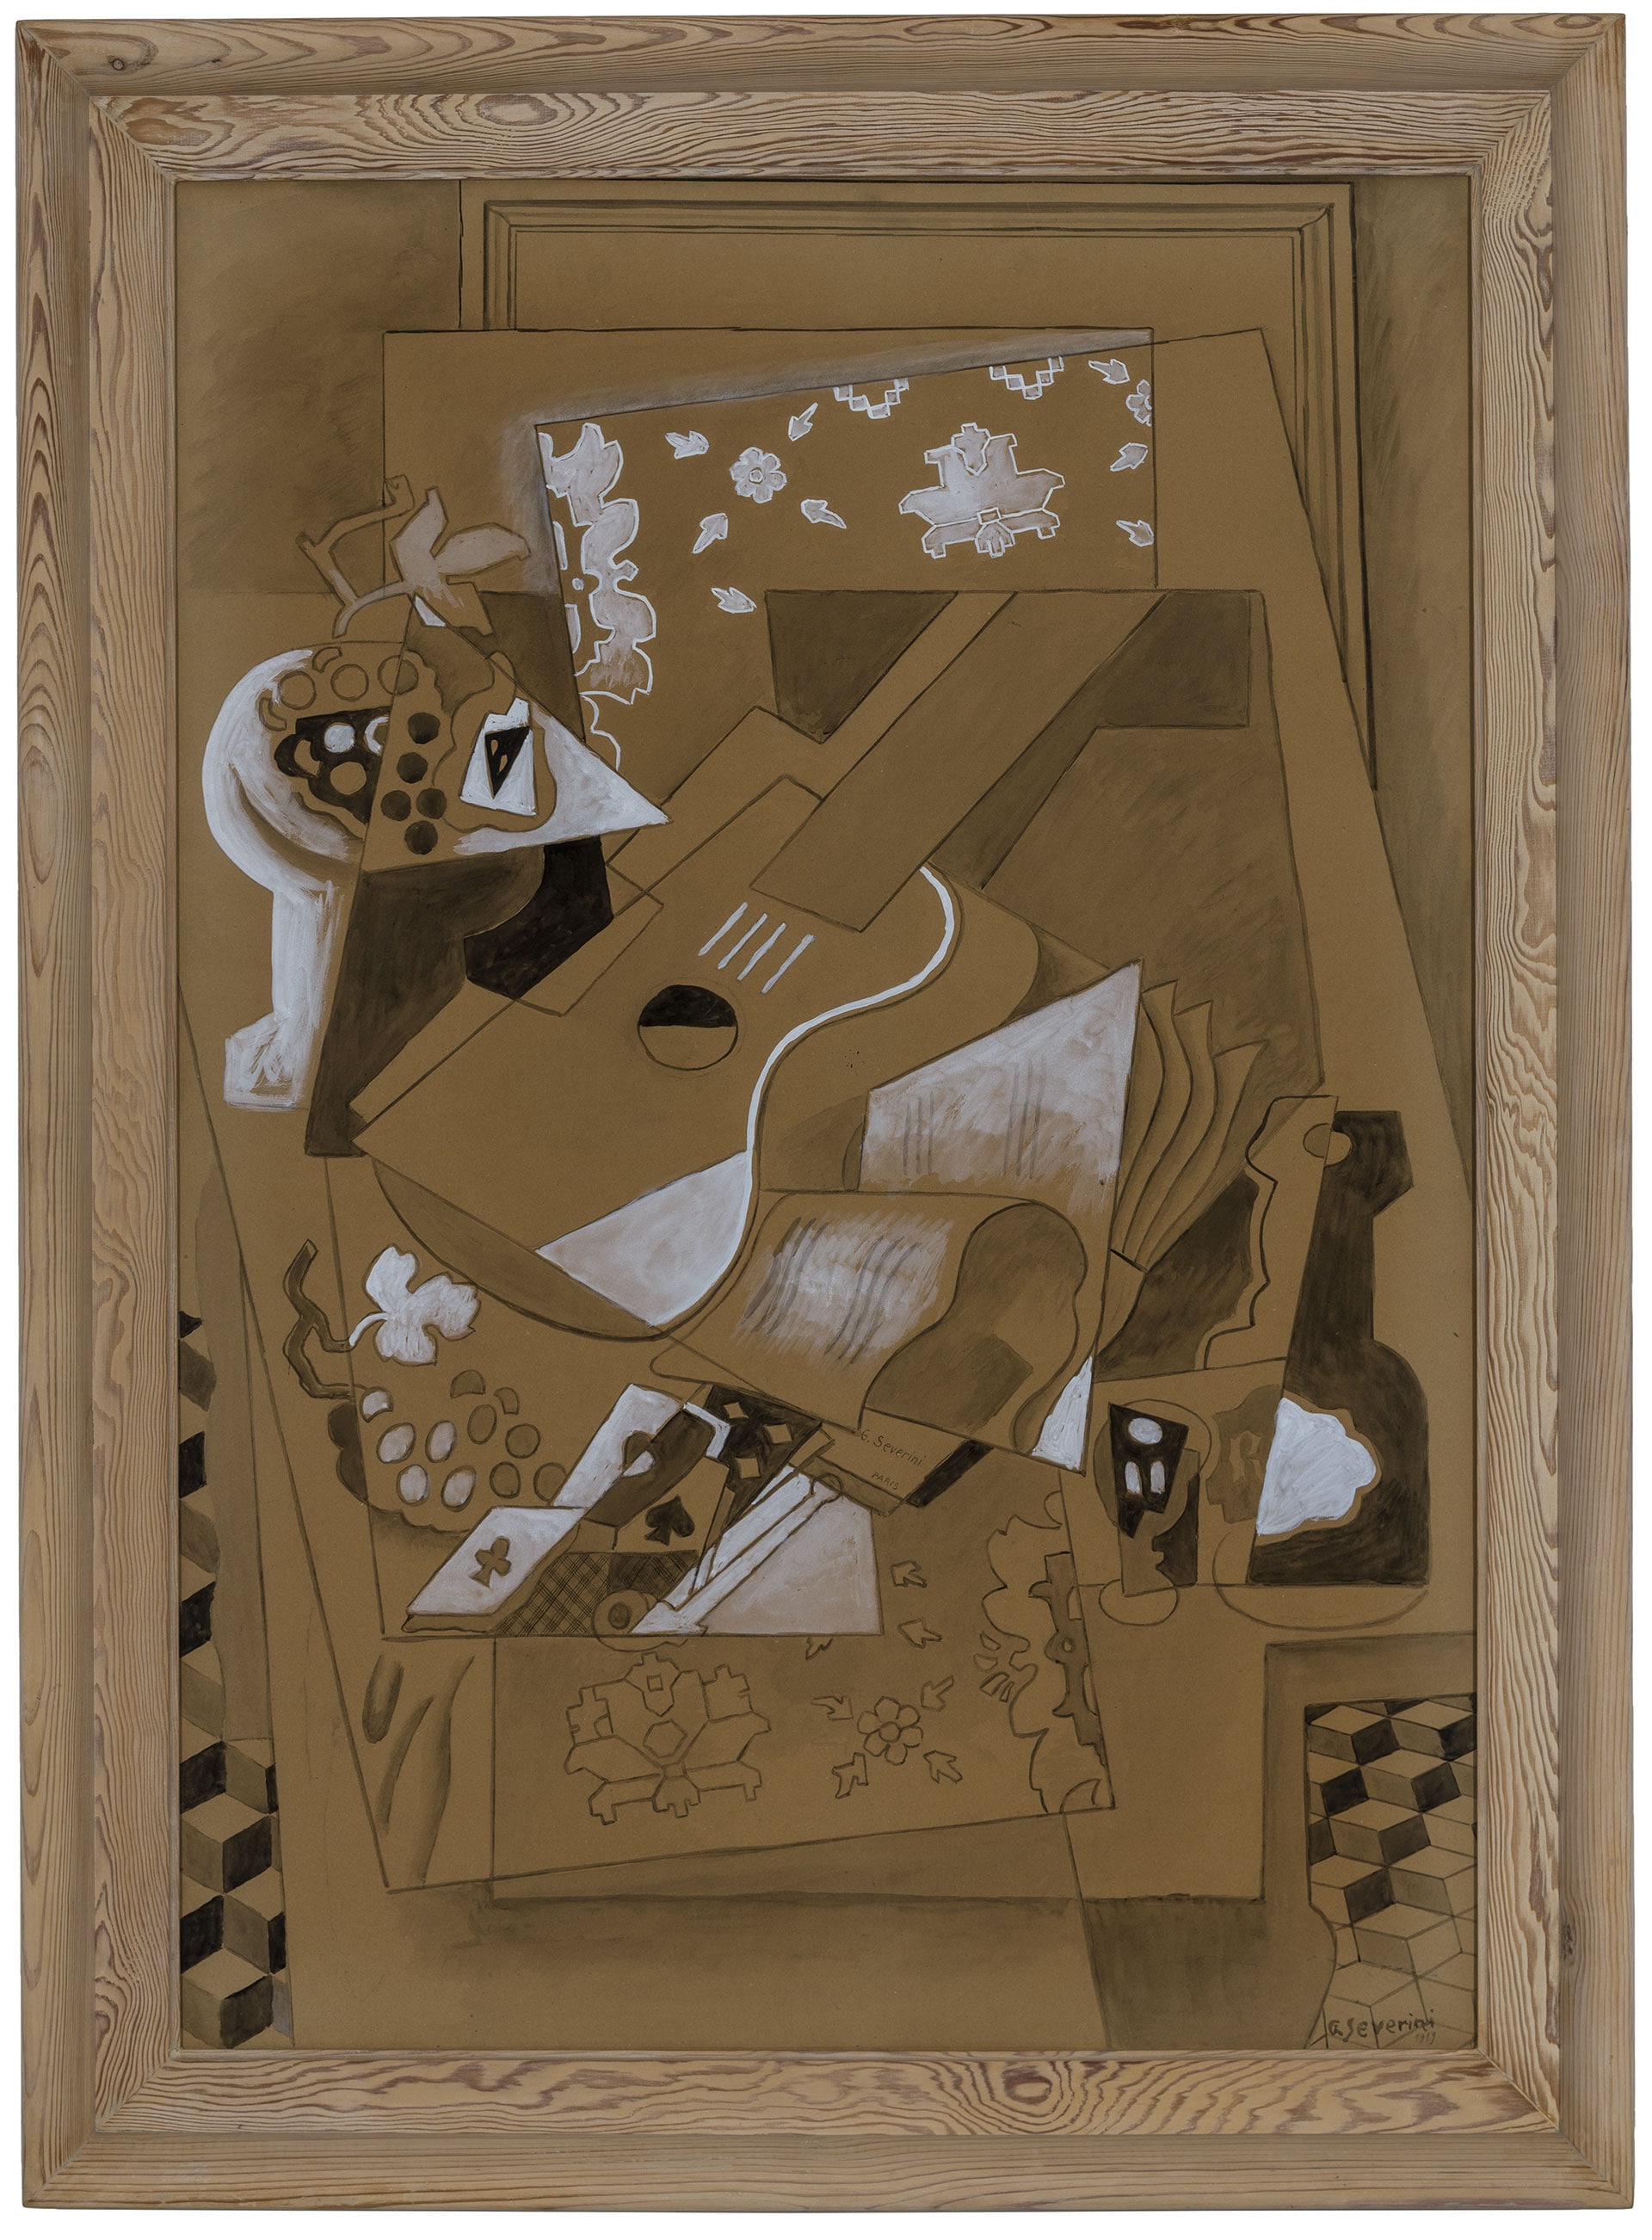 Gino Severini, Natura morta con chitarra, 1919. Tempera su carta, cm. 115x80,5